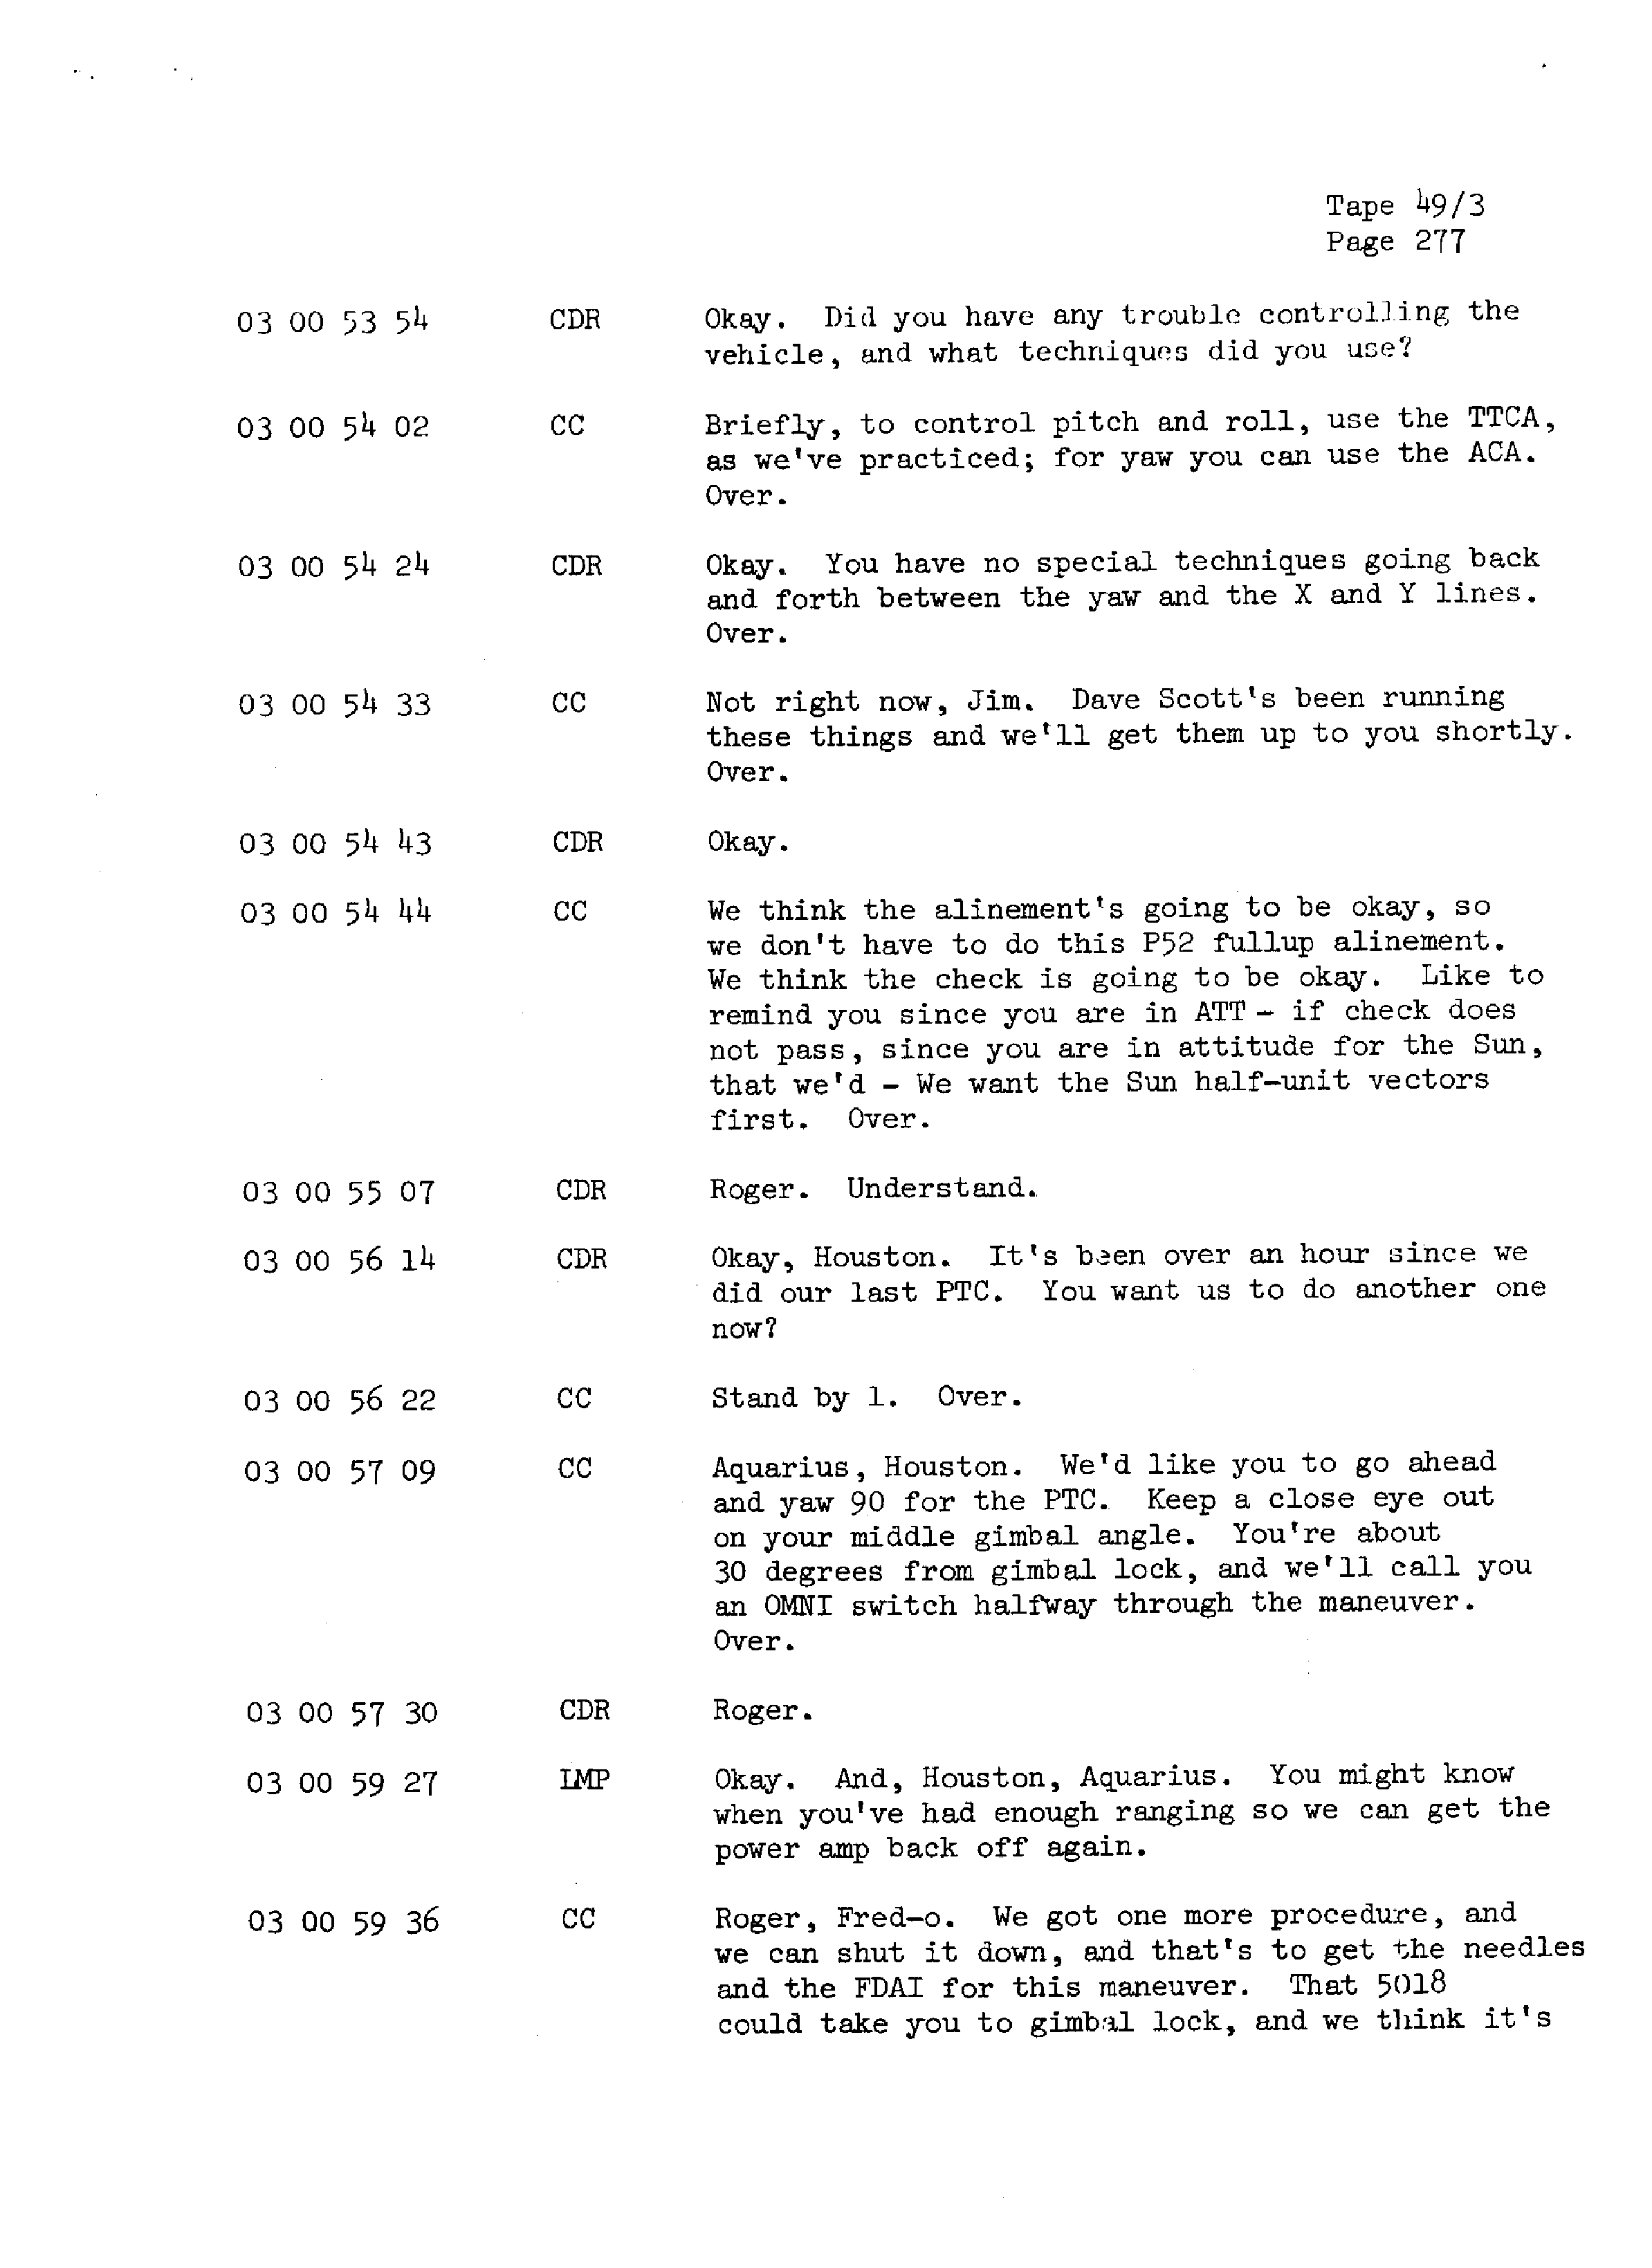 Page 284 of Apollo 13’s original transcript